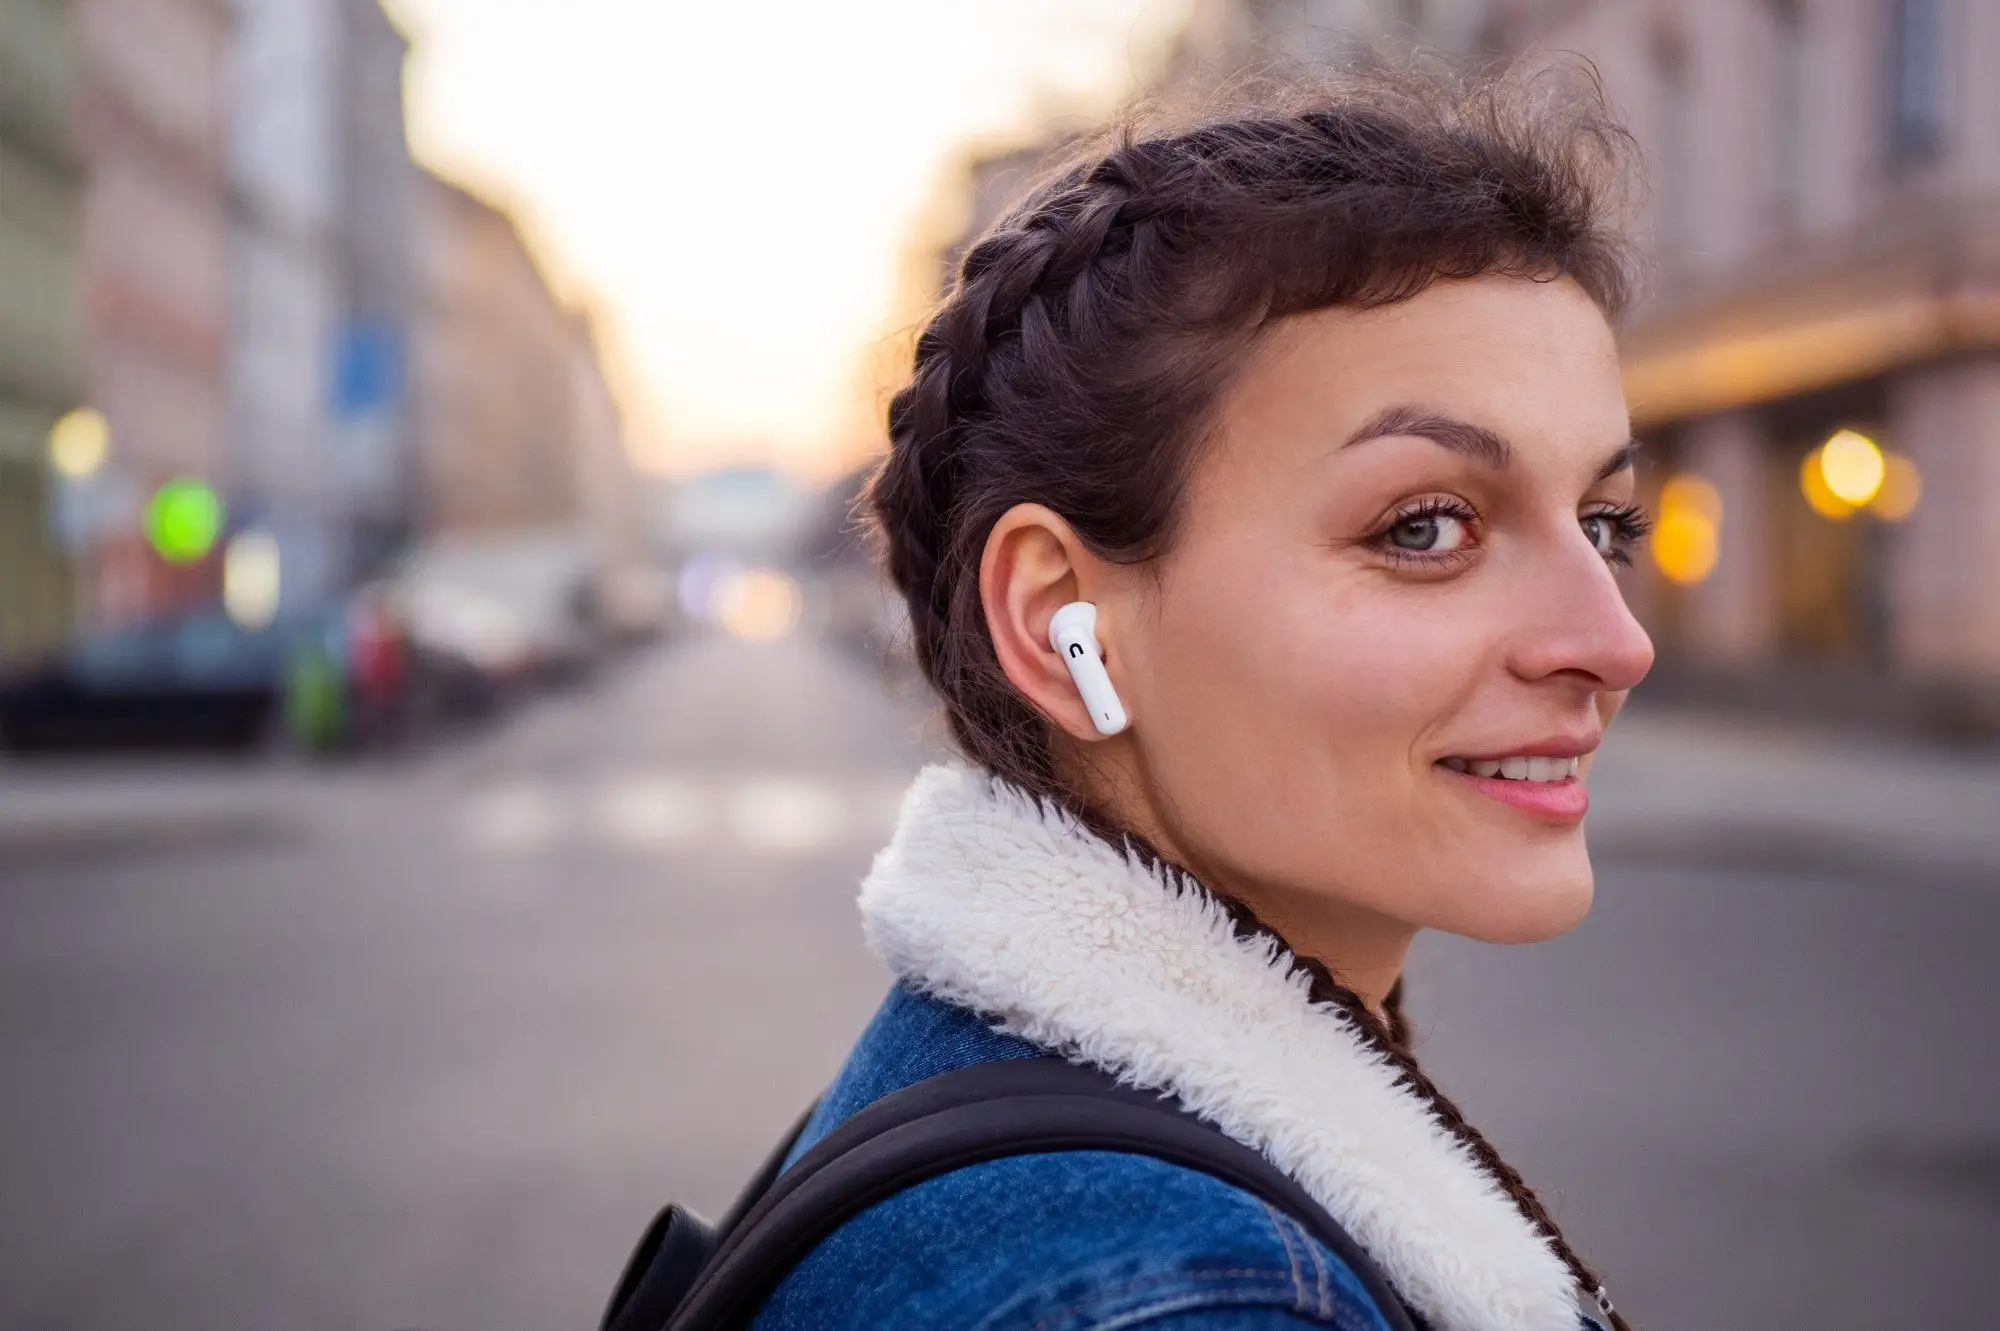 Bezdrôtové In-Ear slúchadlá Niceboy Pins 3 s podporou Bluetooth 5.1 sú navrhnuté tak, aby vás nijako neobmedzovali pri pohybe či pri iných aktivitách.